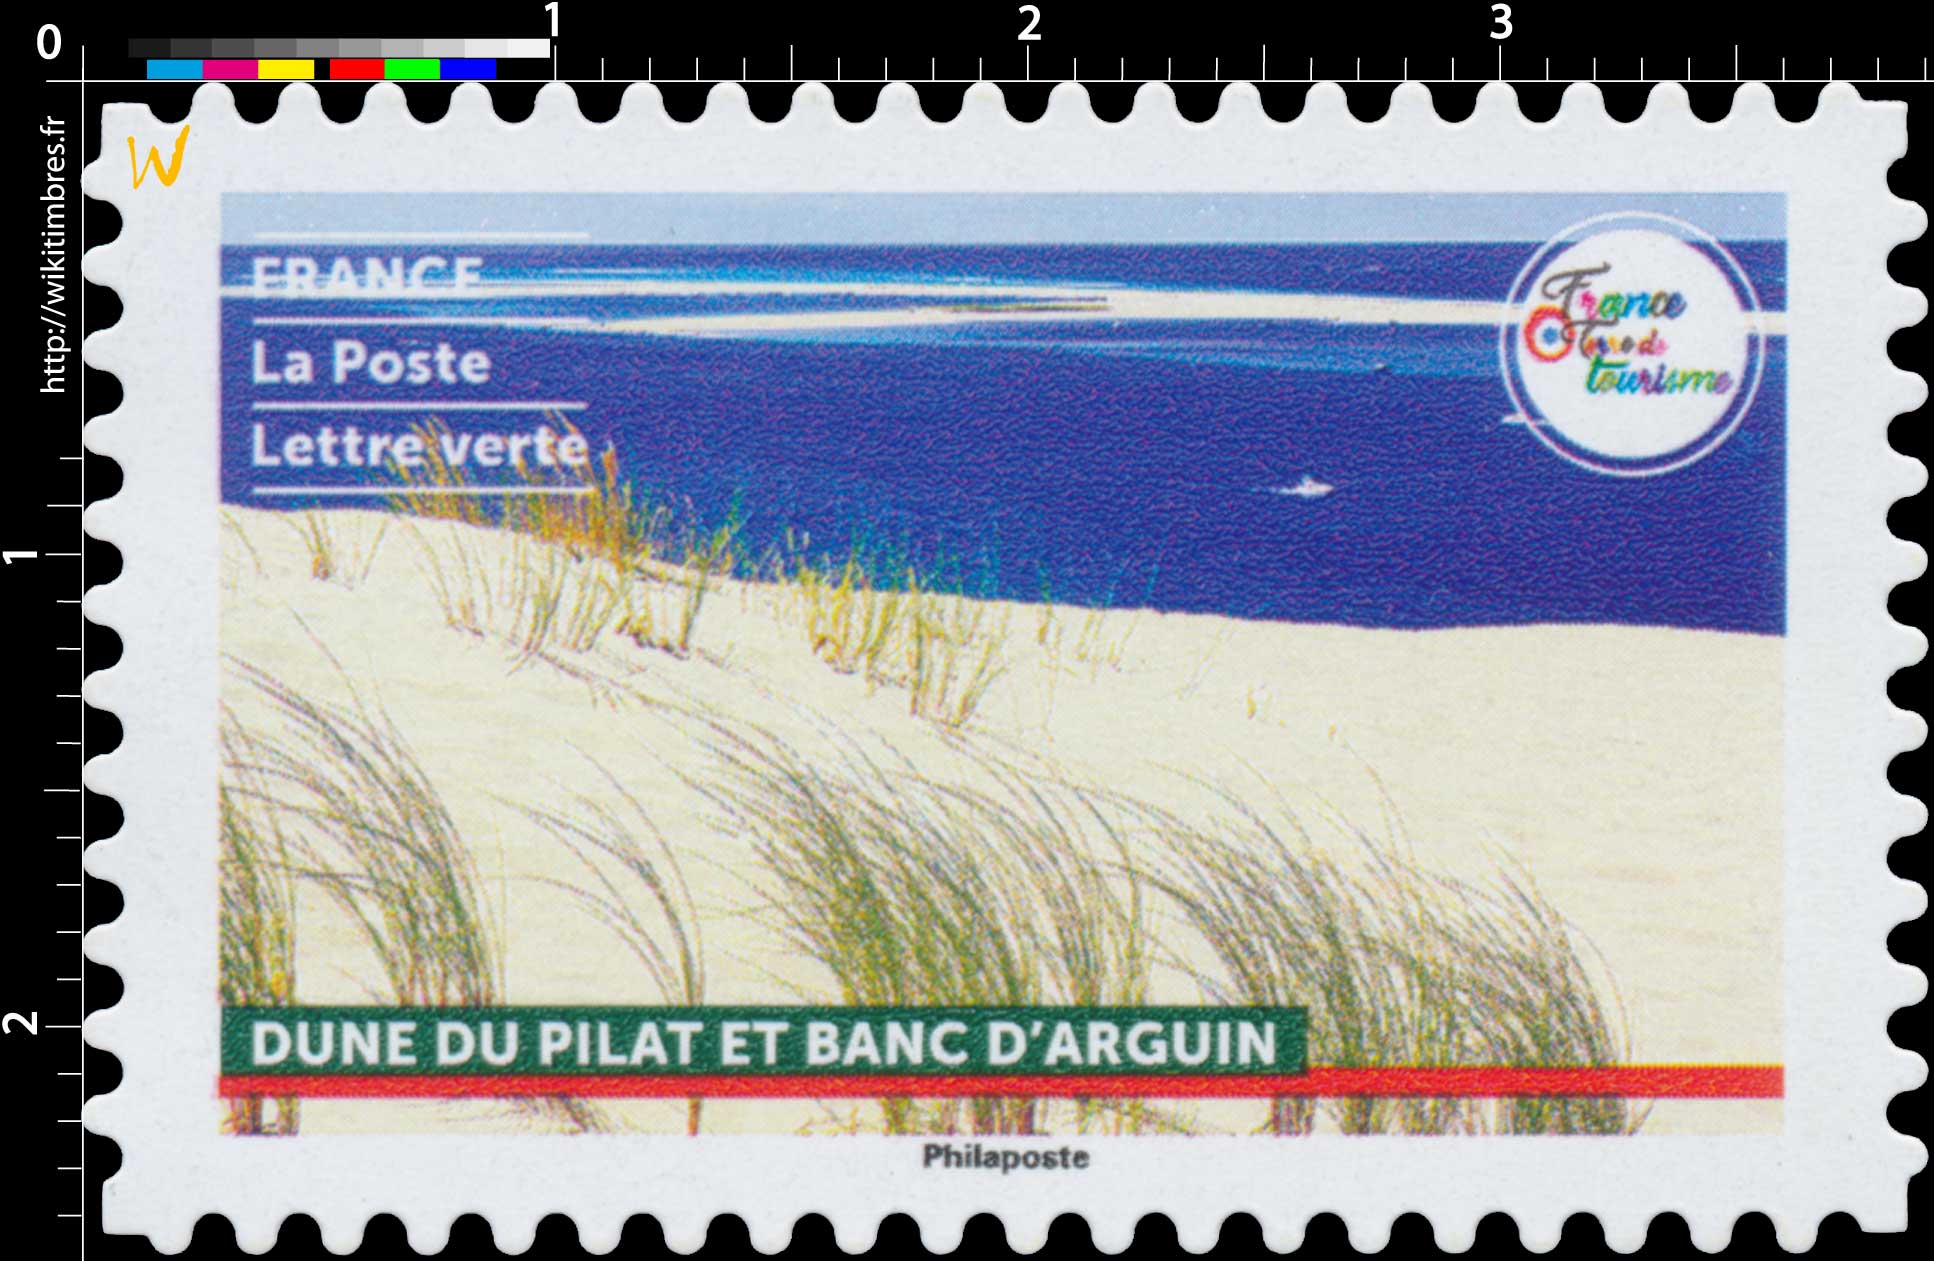 2021 France - Terre de tourisme - Dune du Pilat et banc d'Arguin